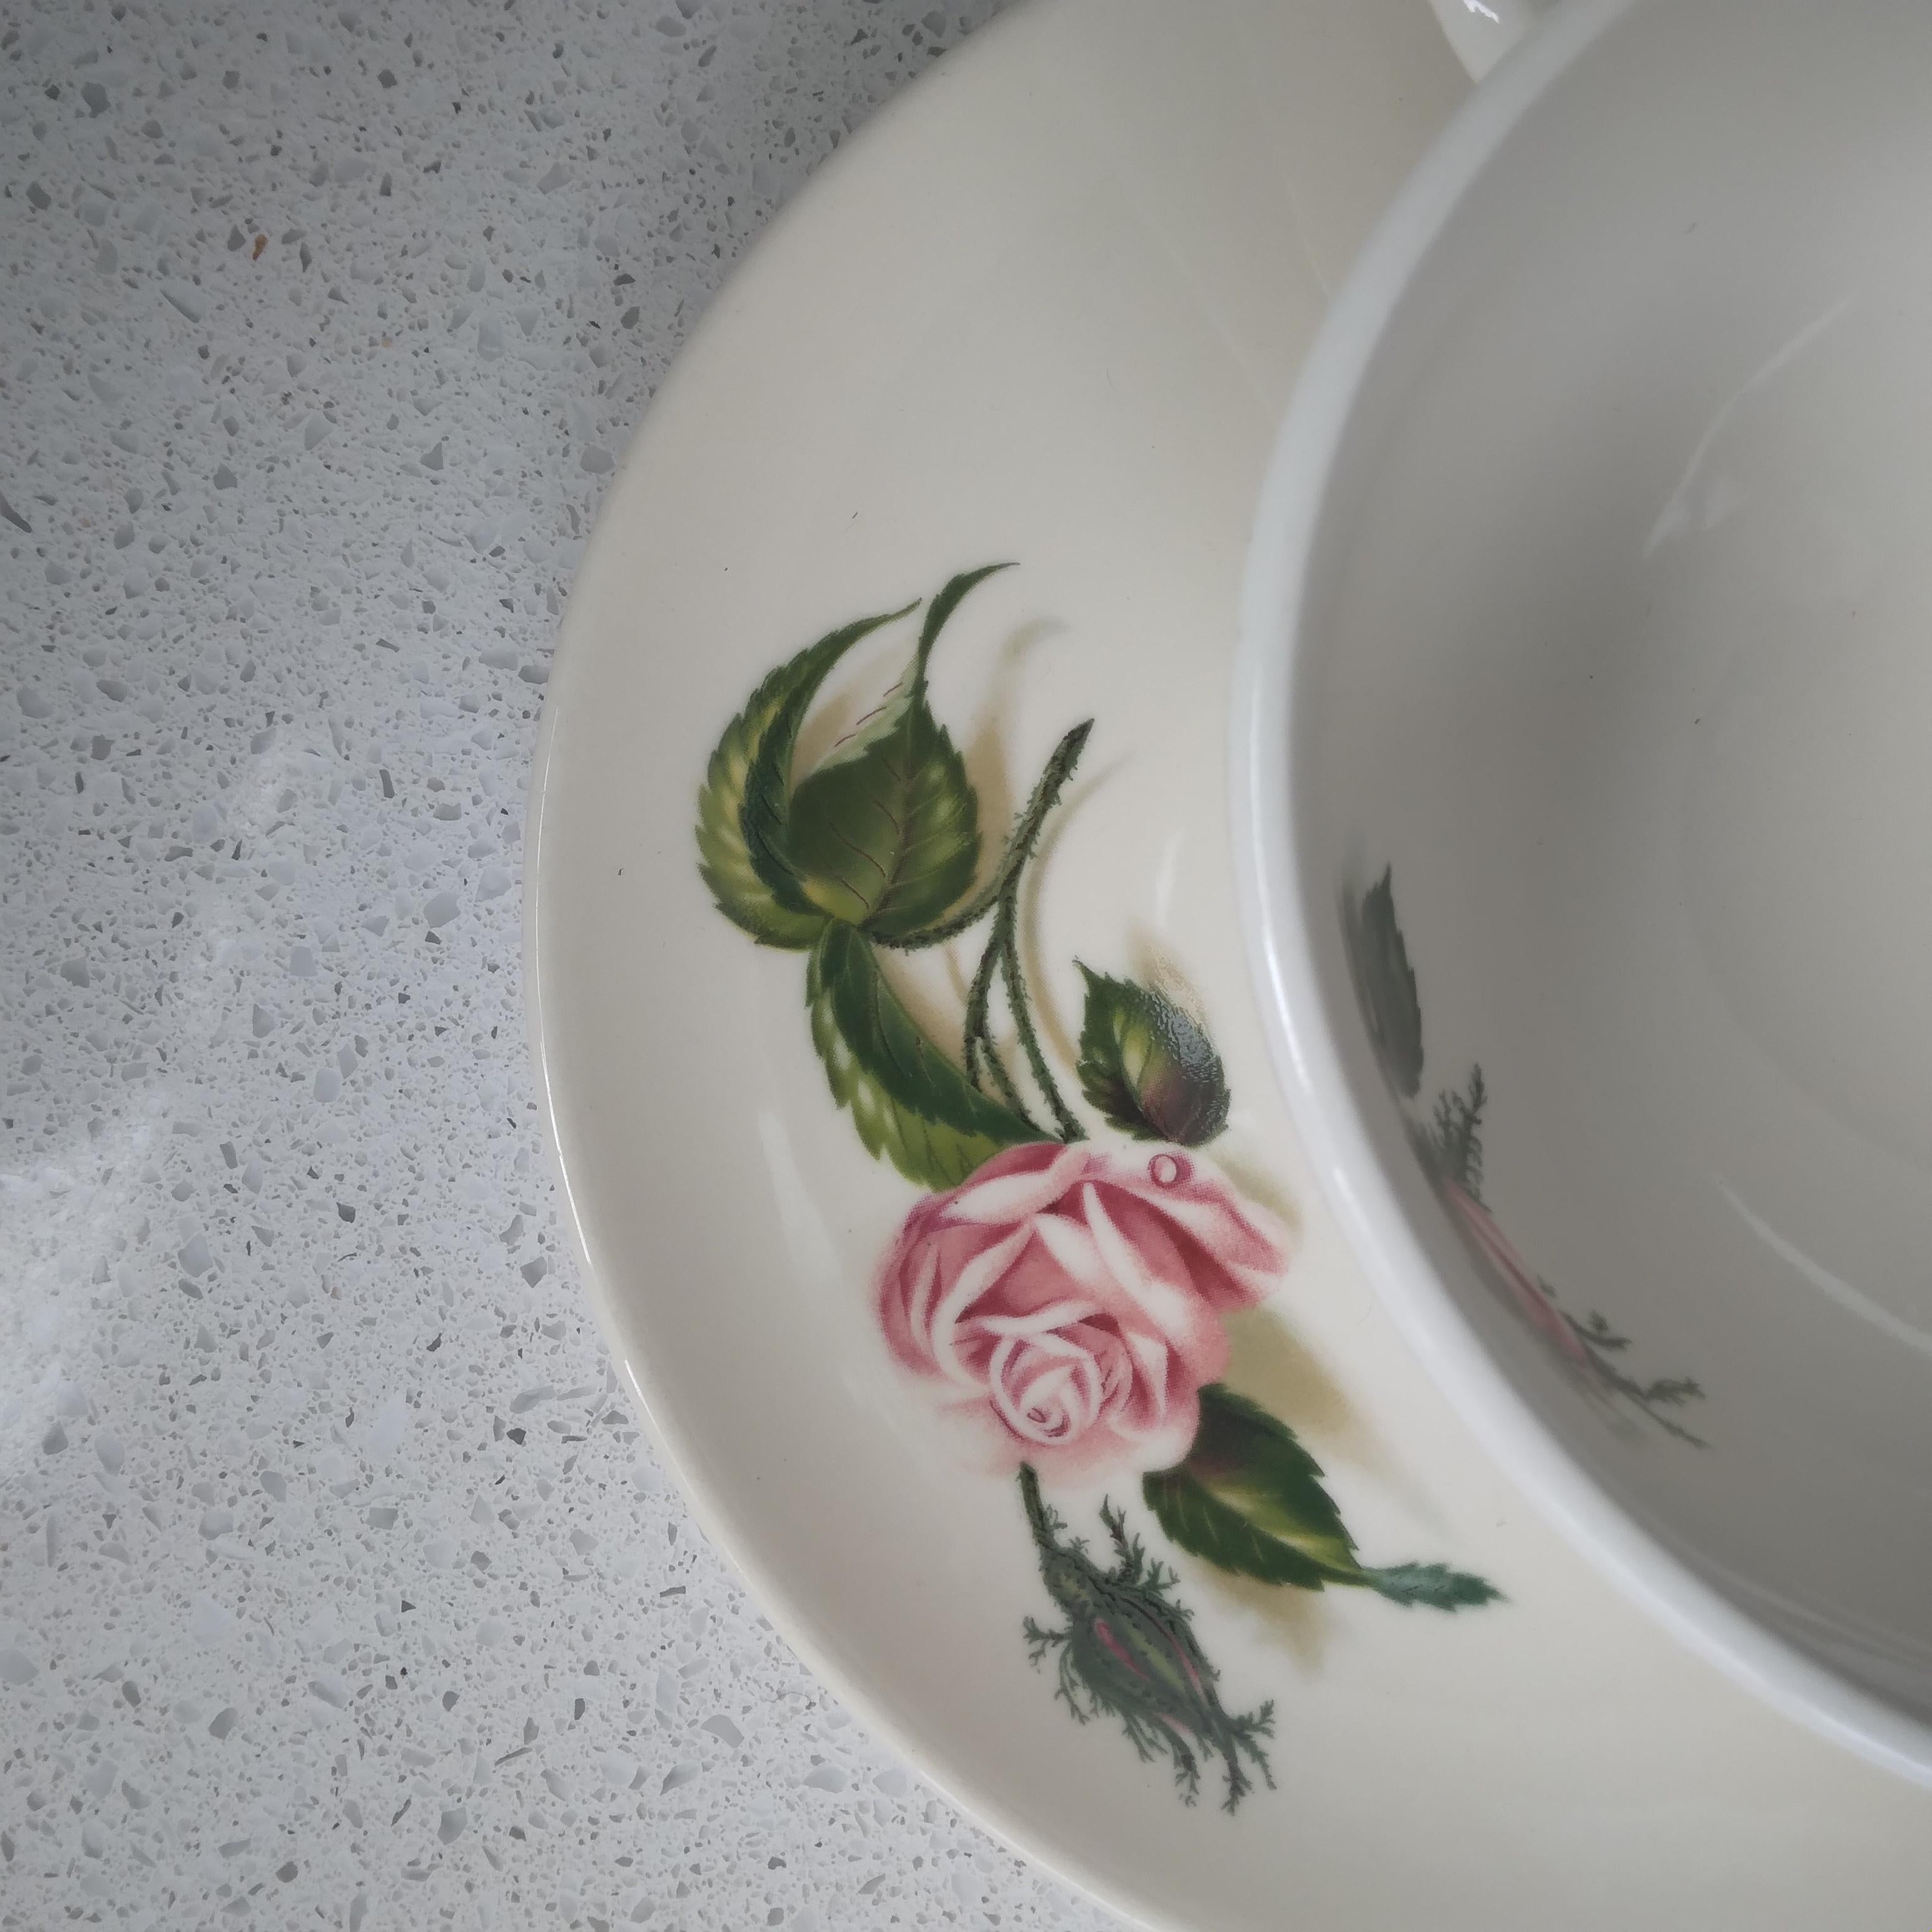 Dieses von einem Rosengarten inspirierte Teeset ist hübsch und beständig.

In den frühen 1950er Jahren brachte Universal Pottery ihre Ballerina-Linie auf den Markt - eine elegante und anmutige Geschirrkollektion, die in einer Vielzahl von